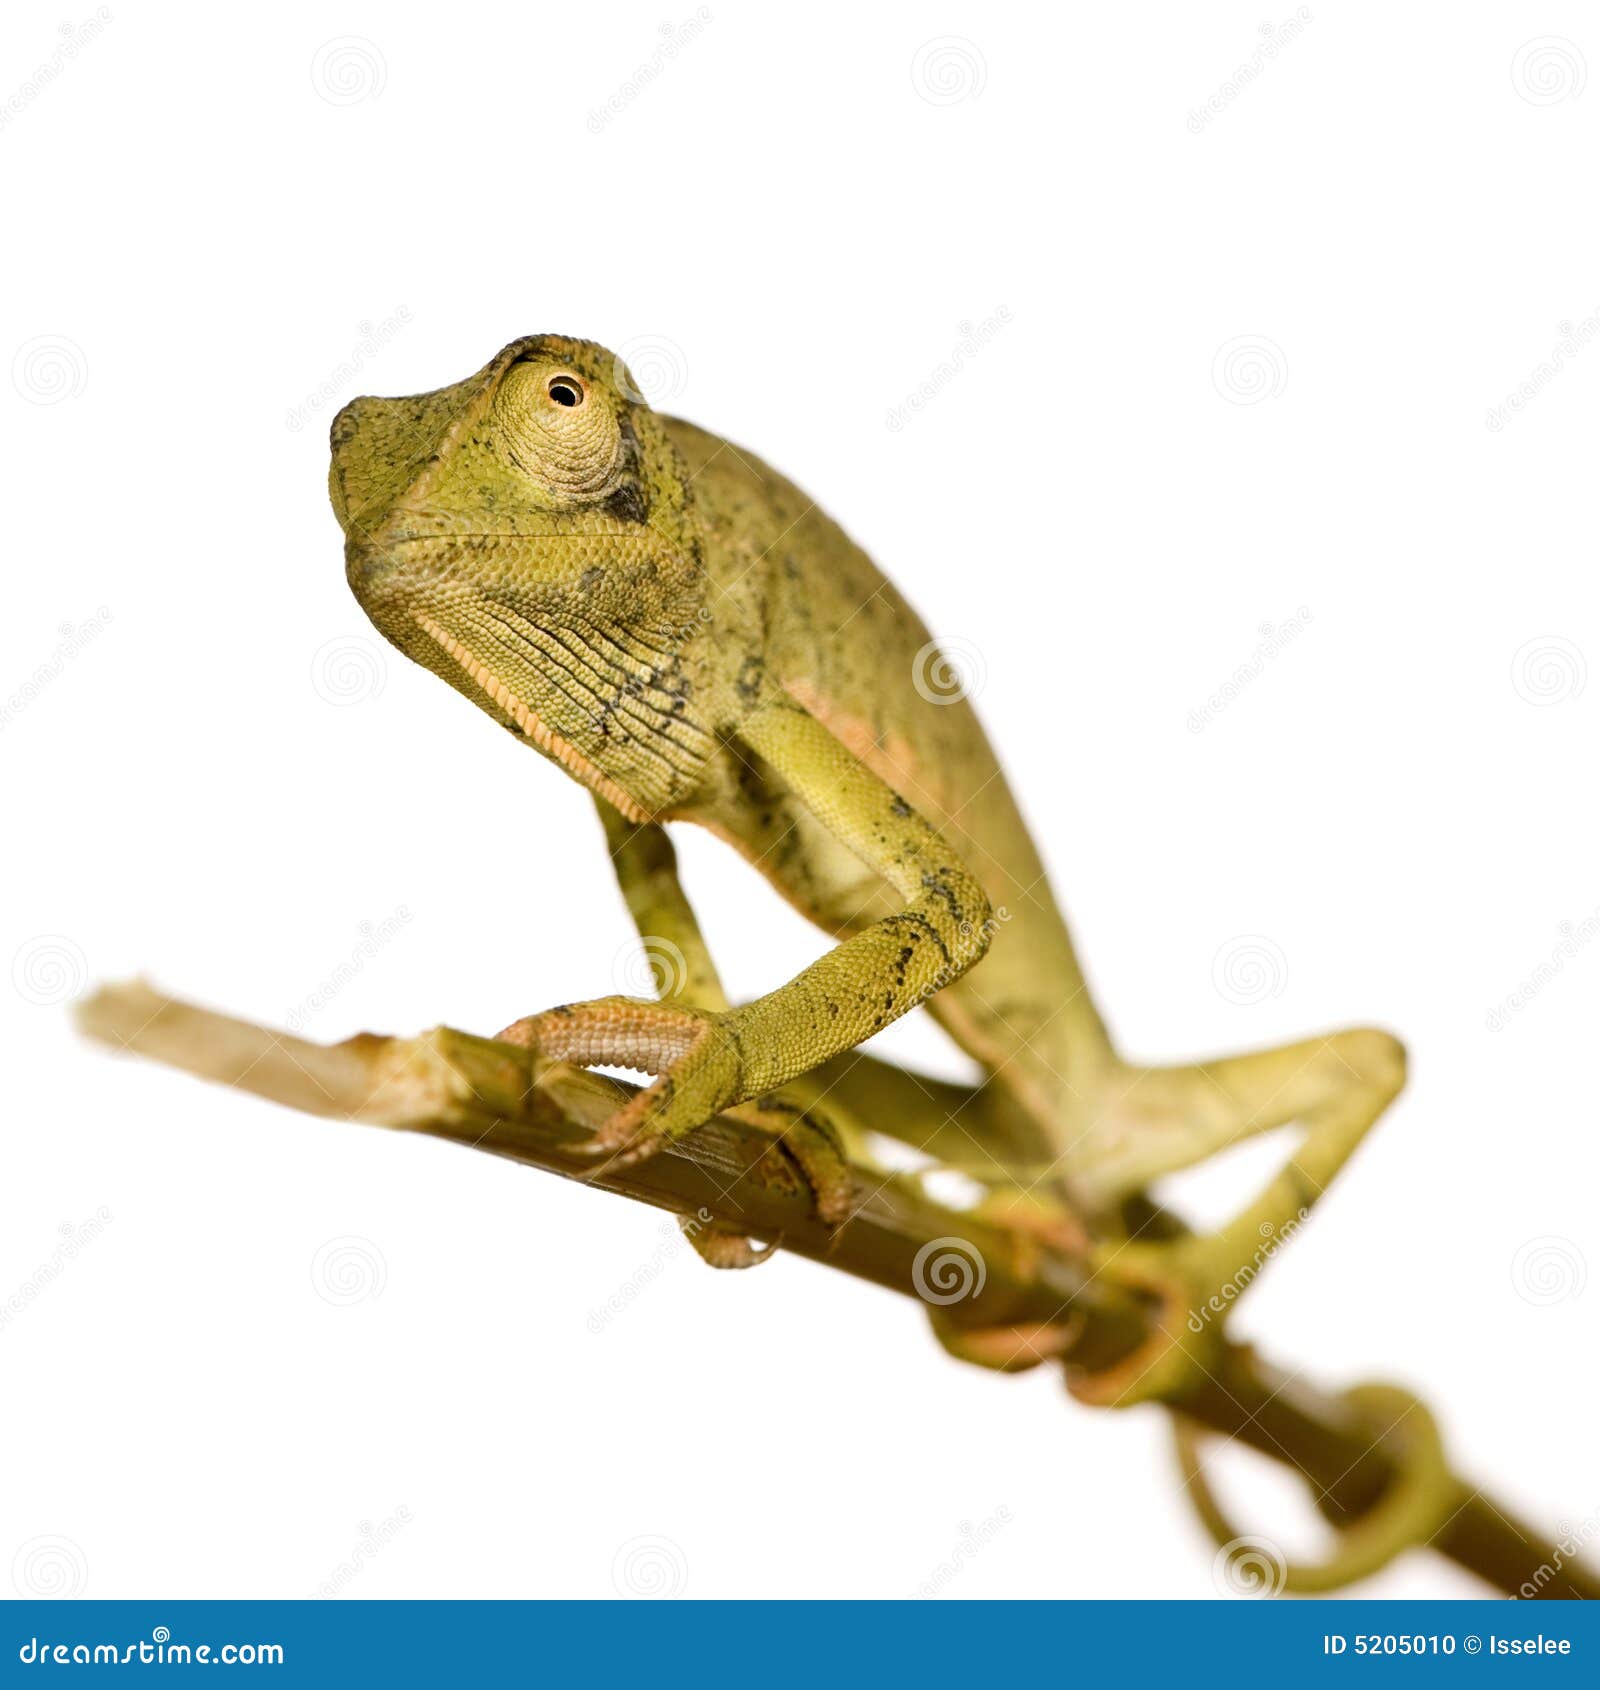 chameleon chamaeleo gracilis or dilepis